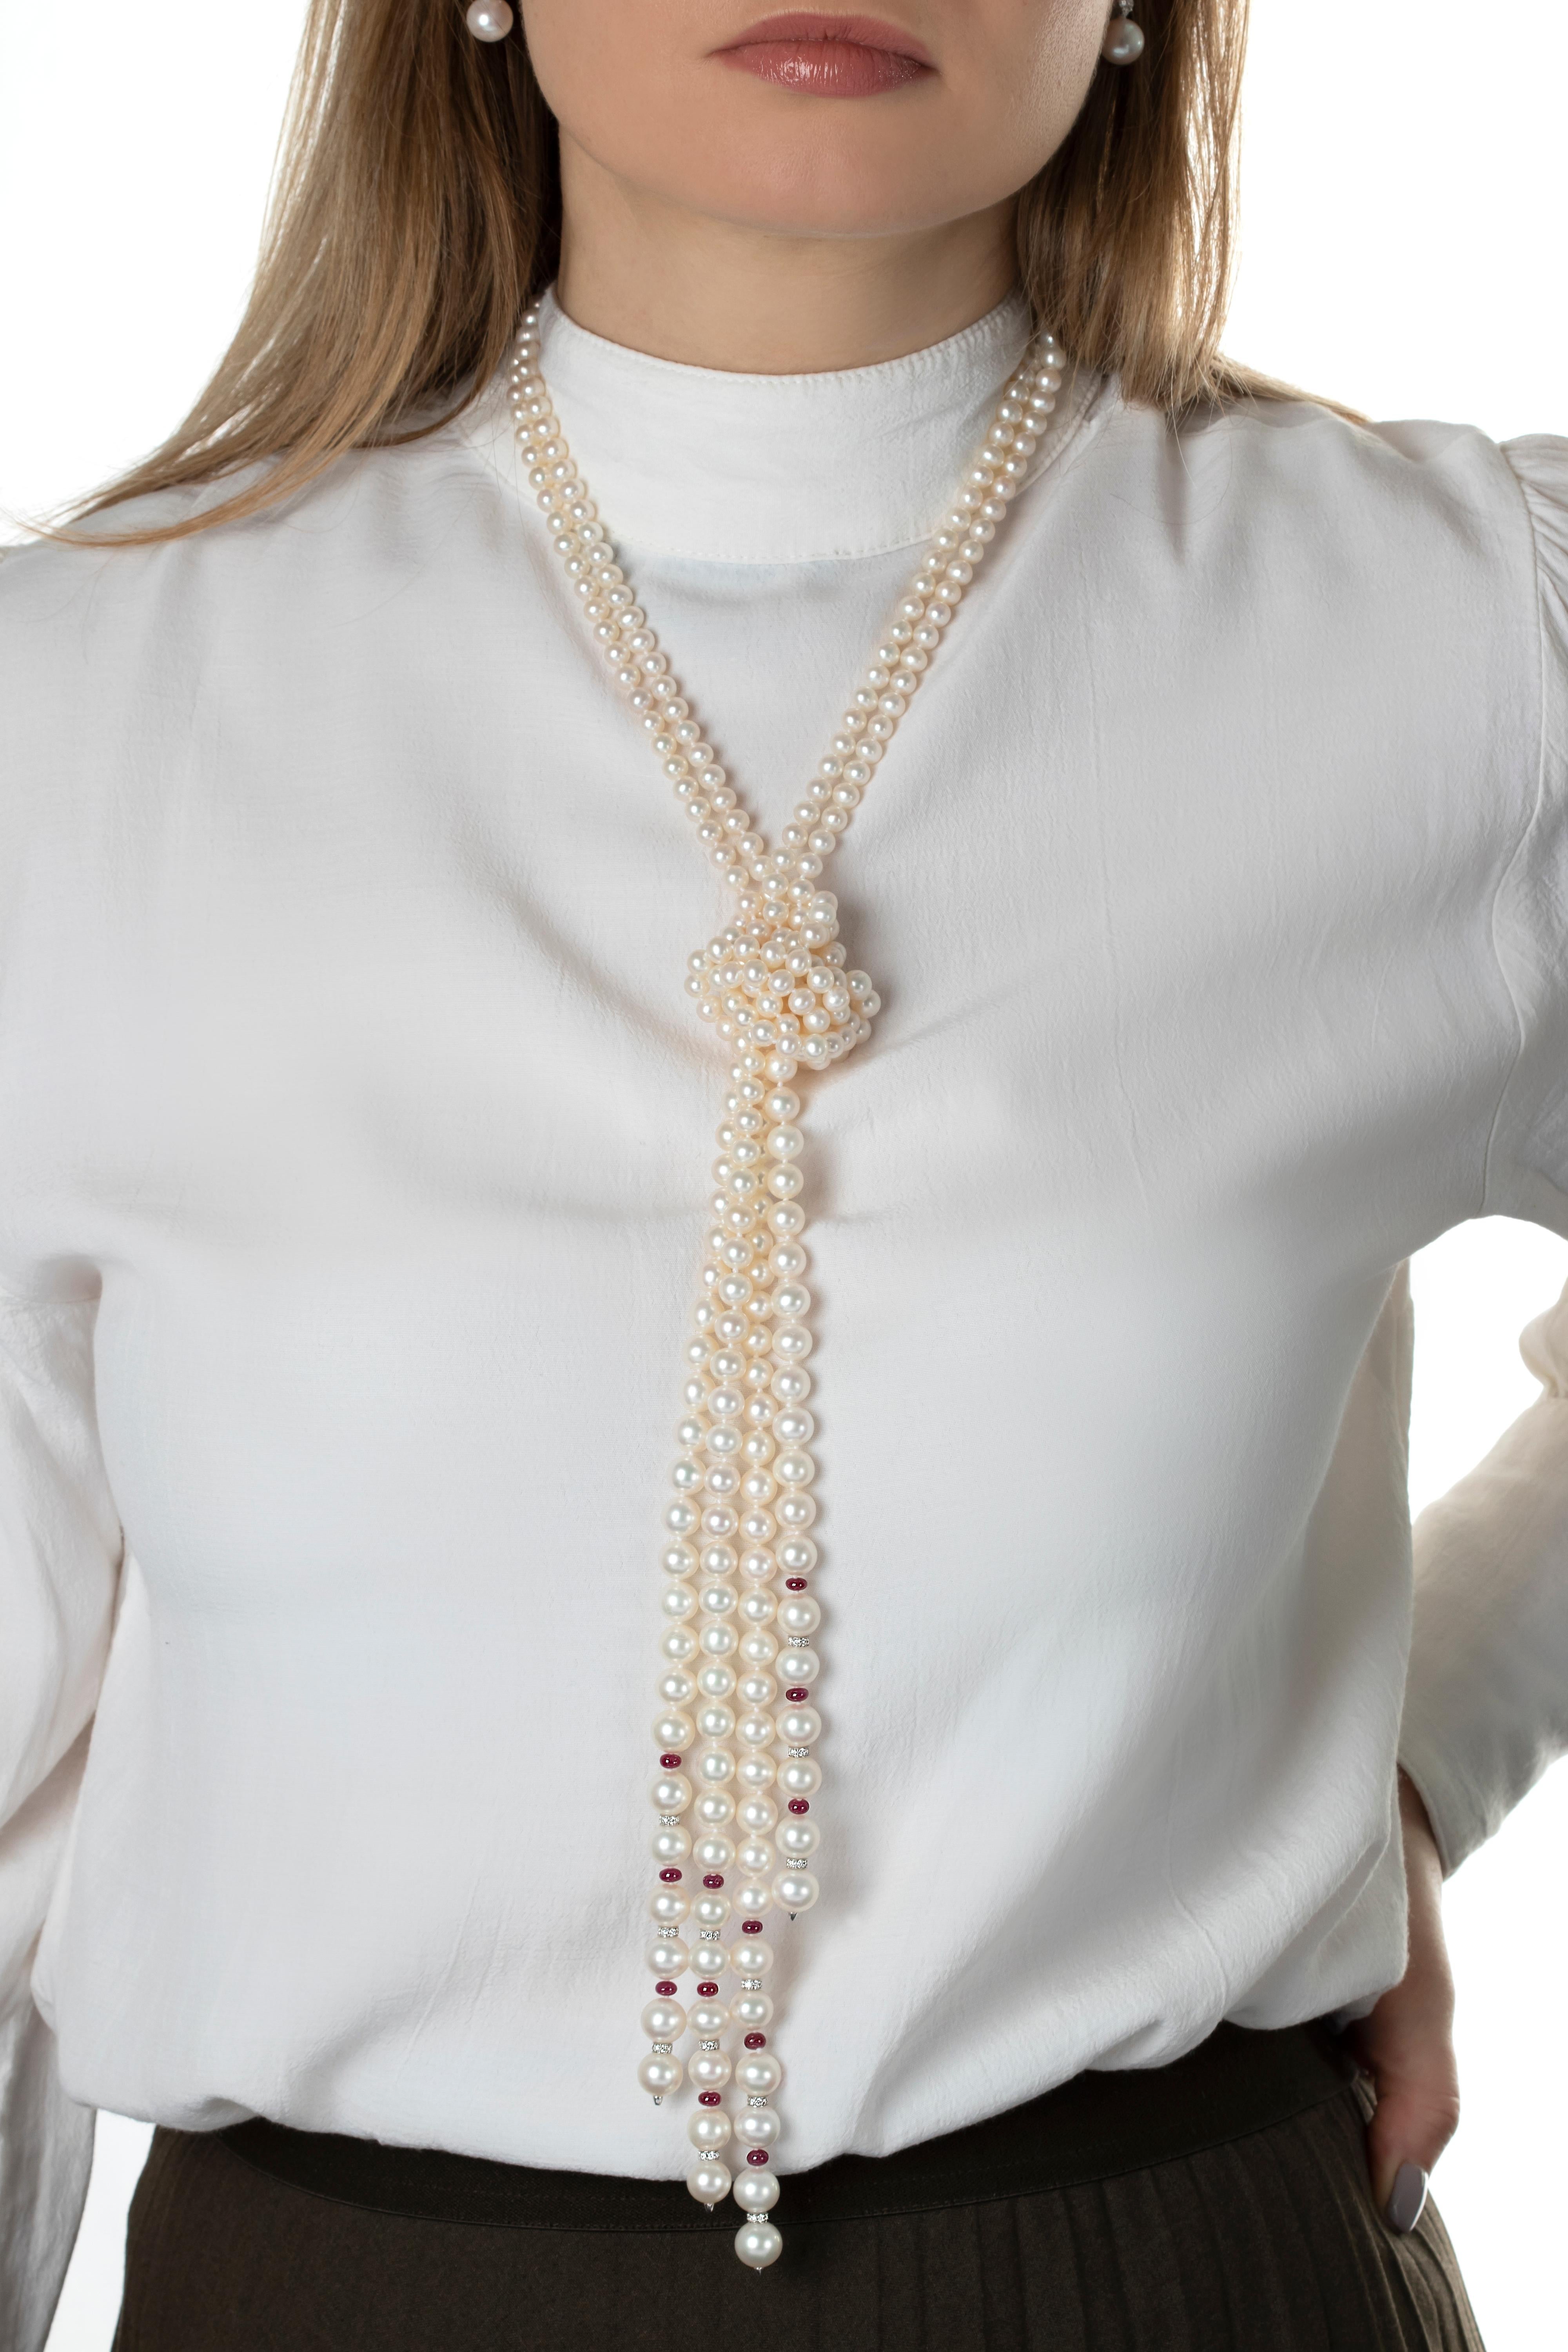 La combinaison intemporelle du rubis, du diamant et de la perle a été réimaginée par Yoko London dans ce collier unique. Il s'agit de deux longueurs distinctes de perles d'eau douce, entrecoupées de rondelles de diamant et de rubis aux extrémités.